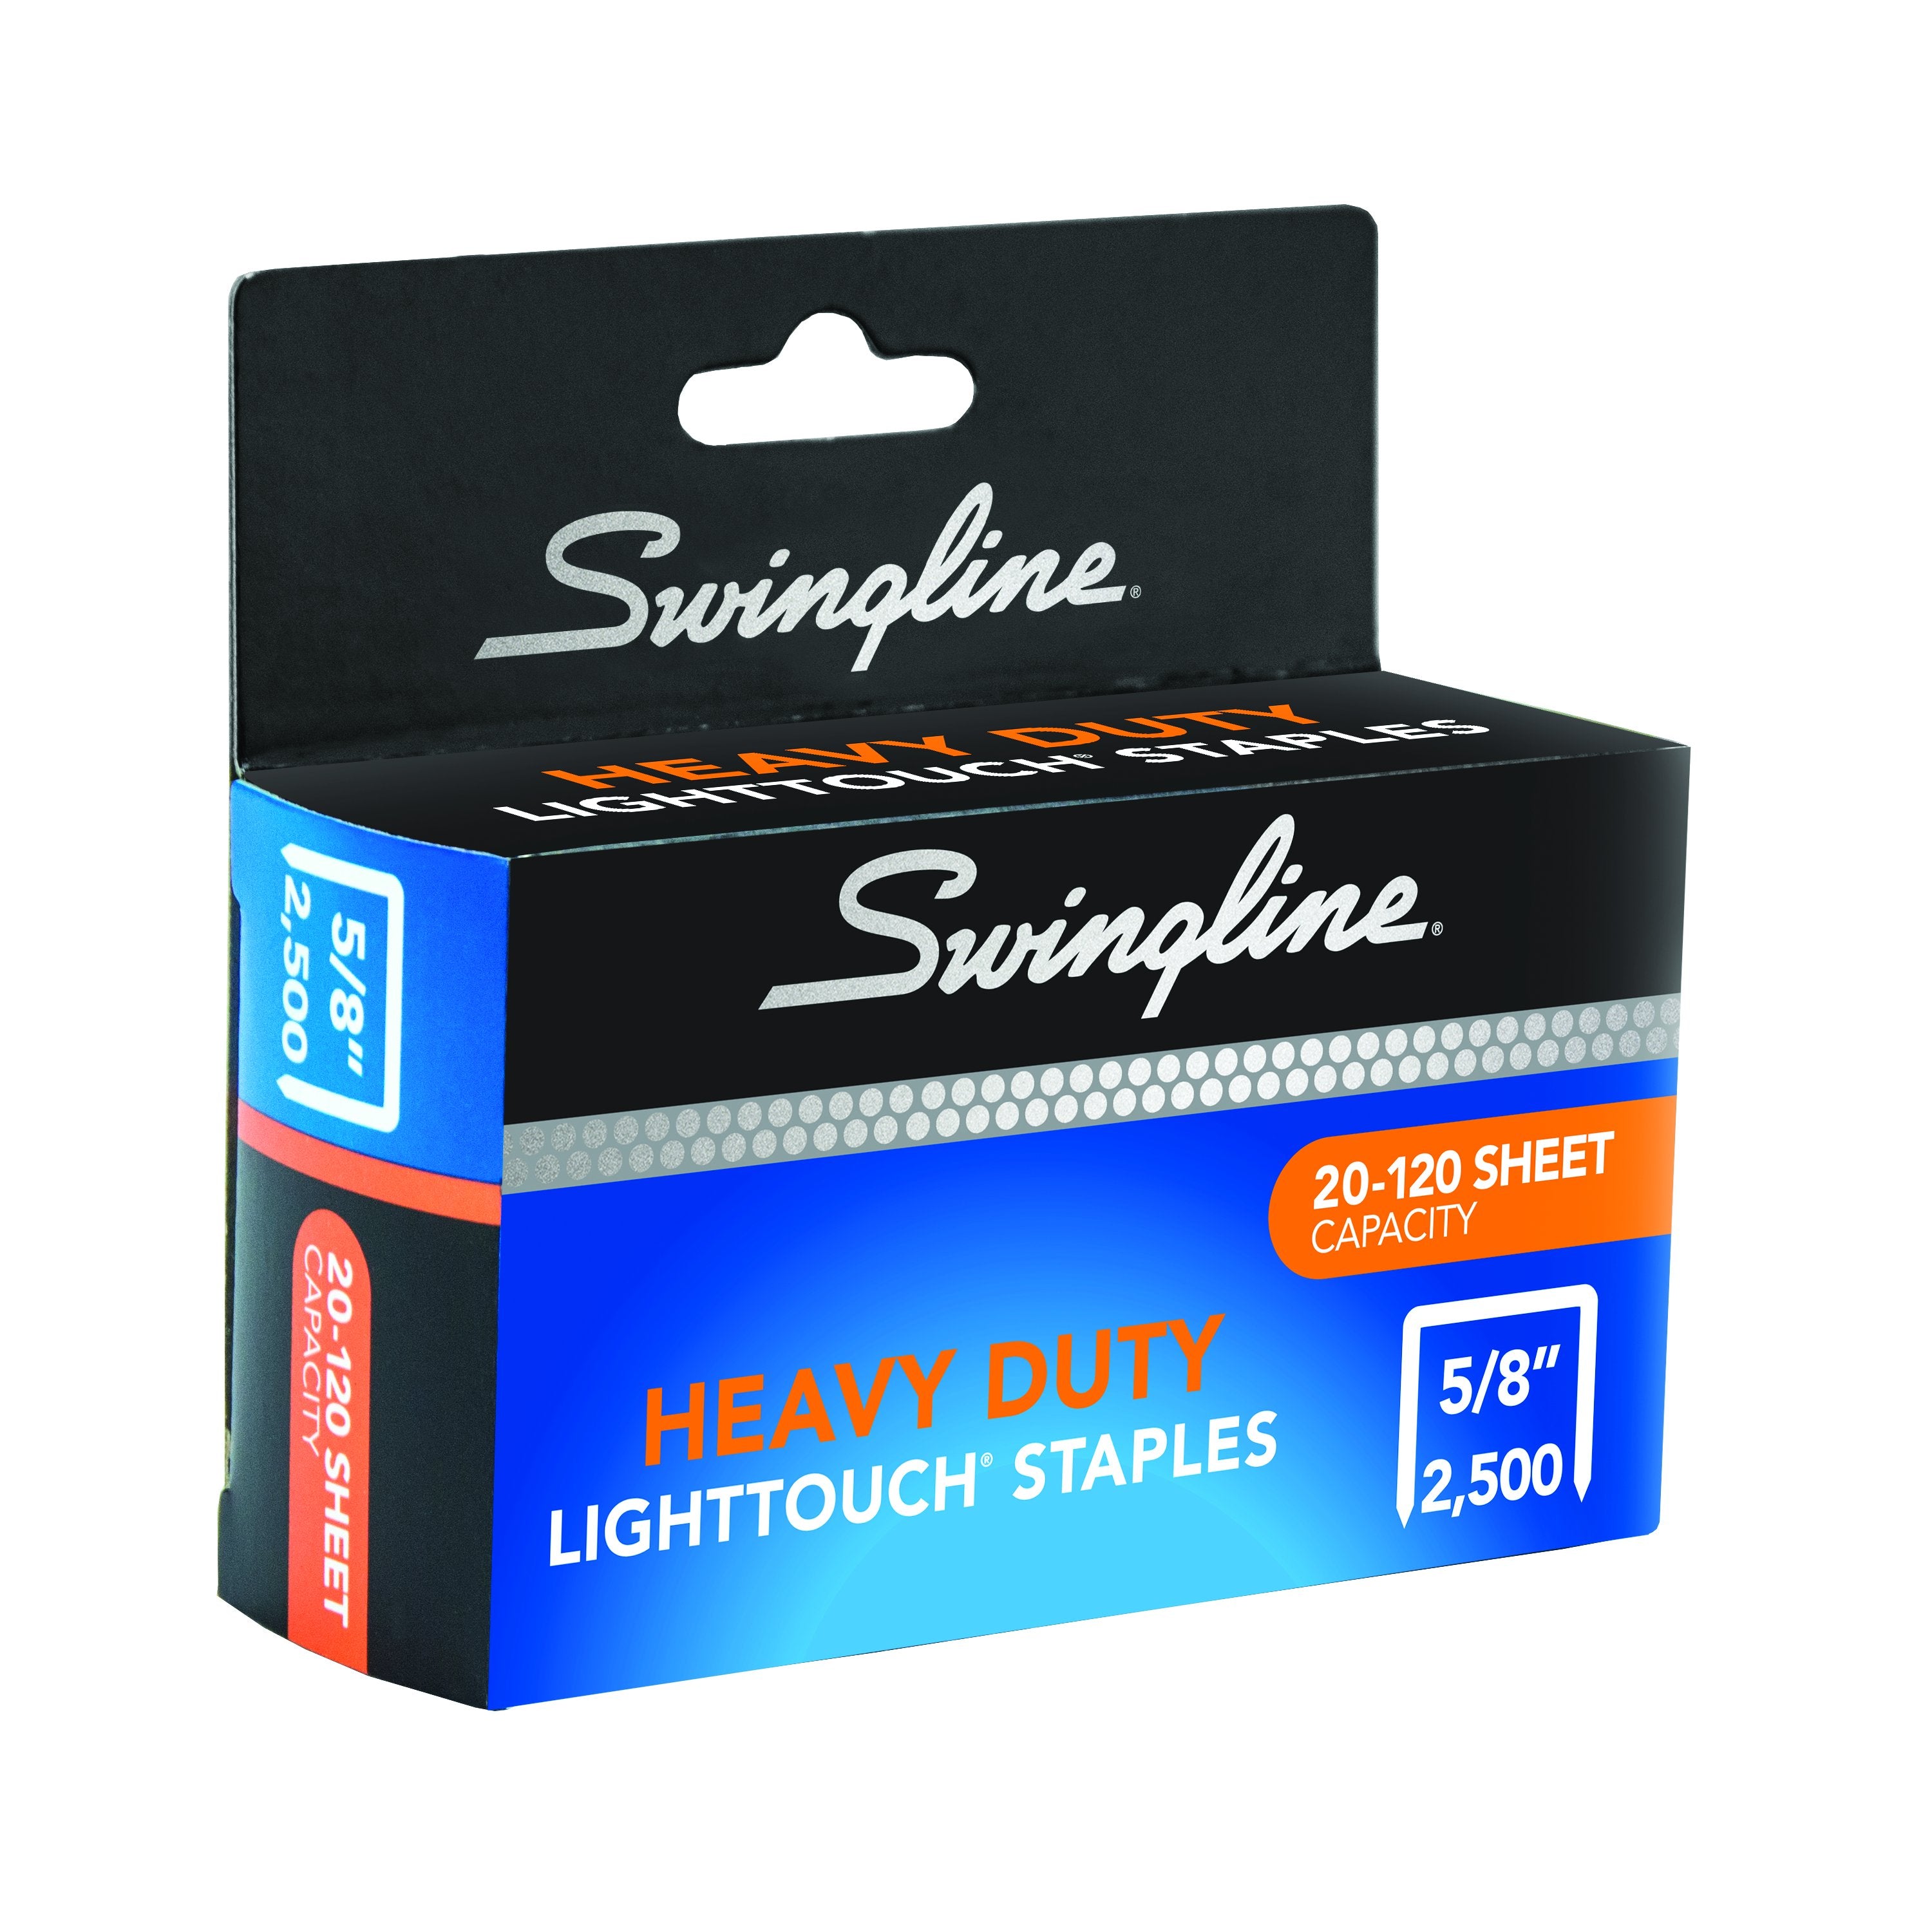 Swingline® LightTouch® Heavy Duty Staples - 5/8" Leg Length - 2,500 Staples/Box